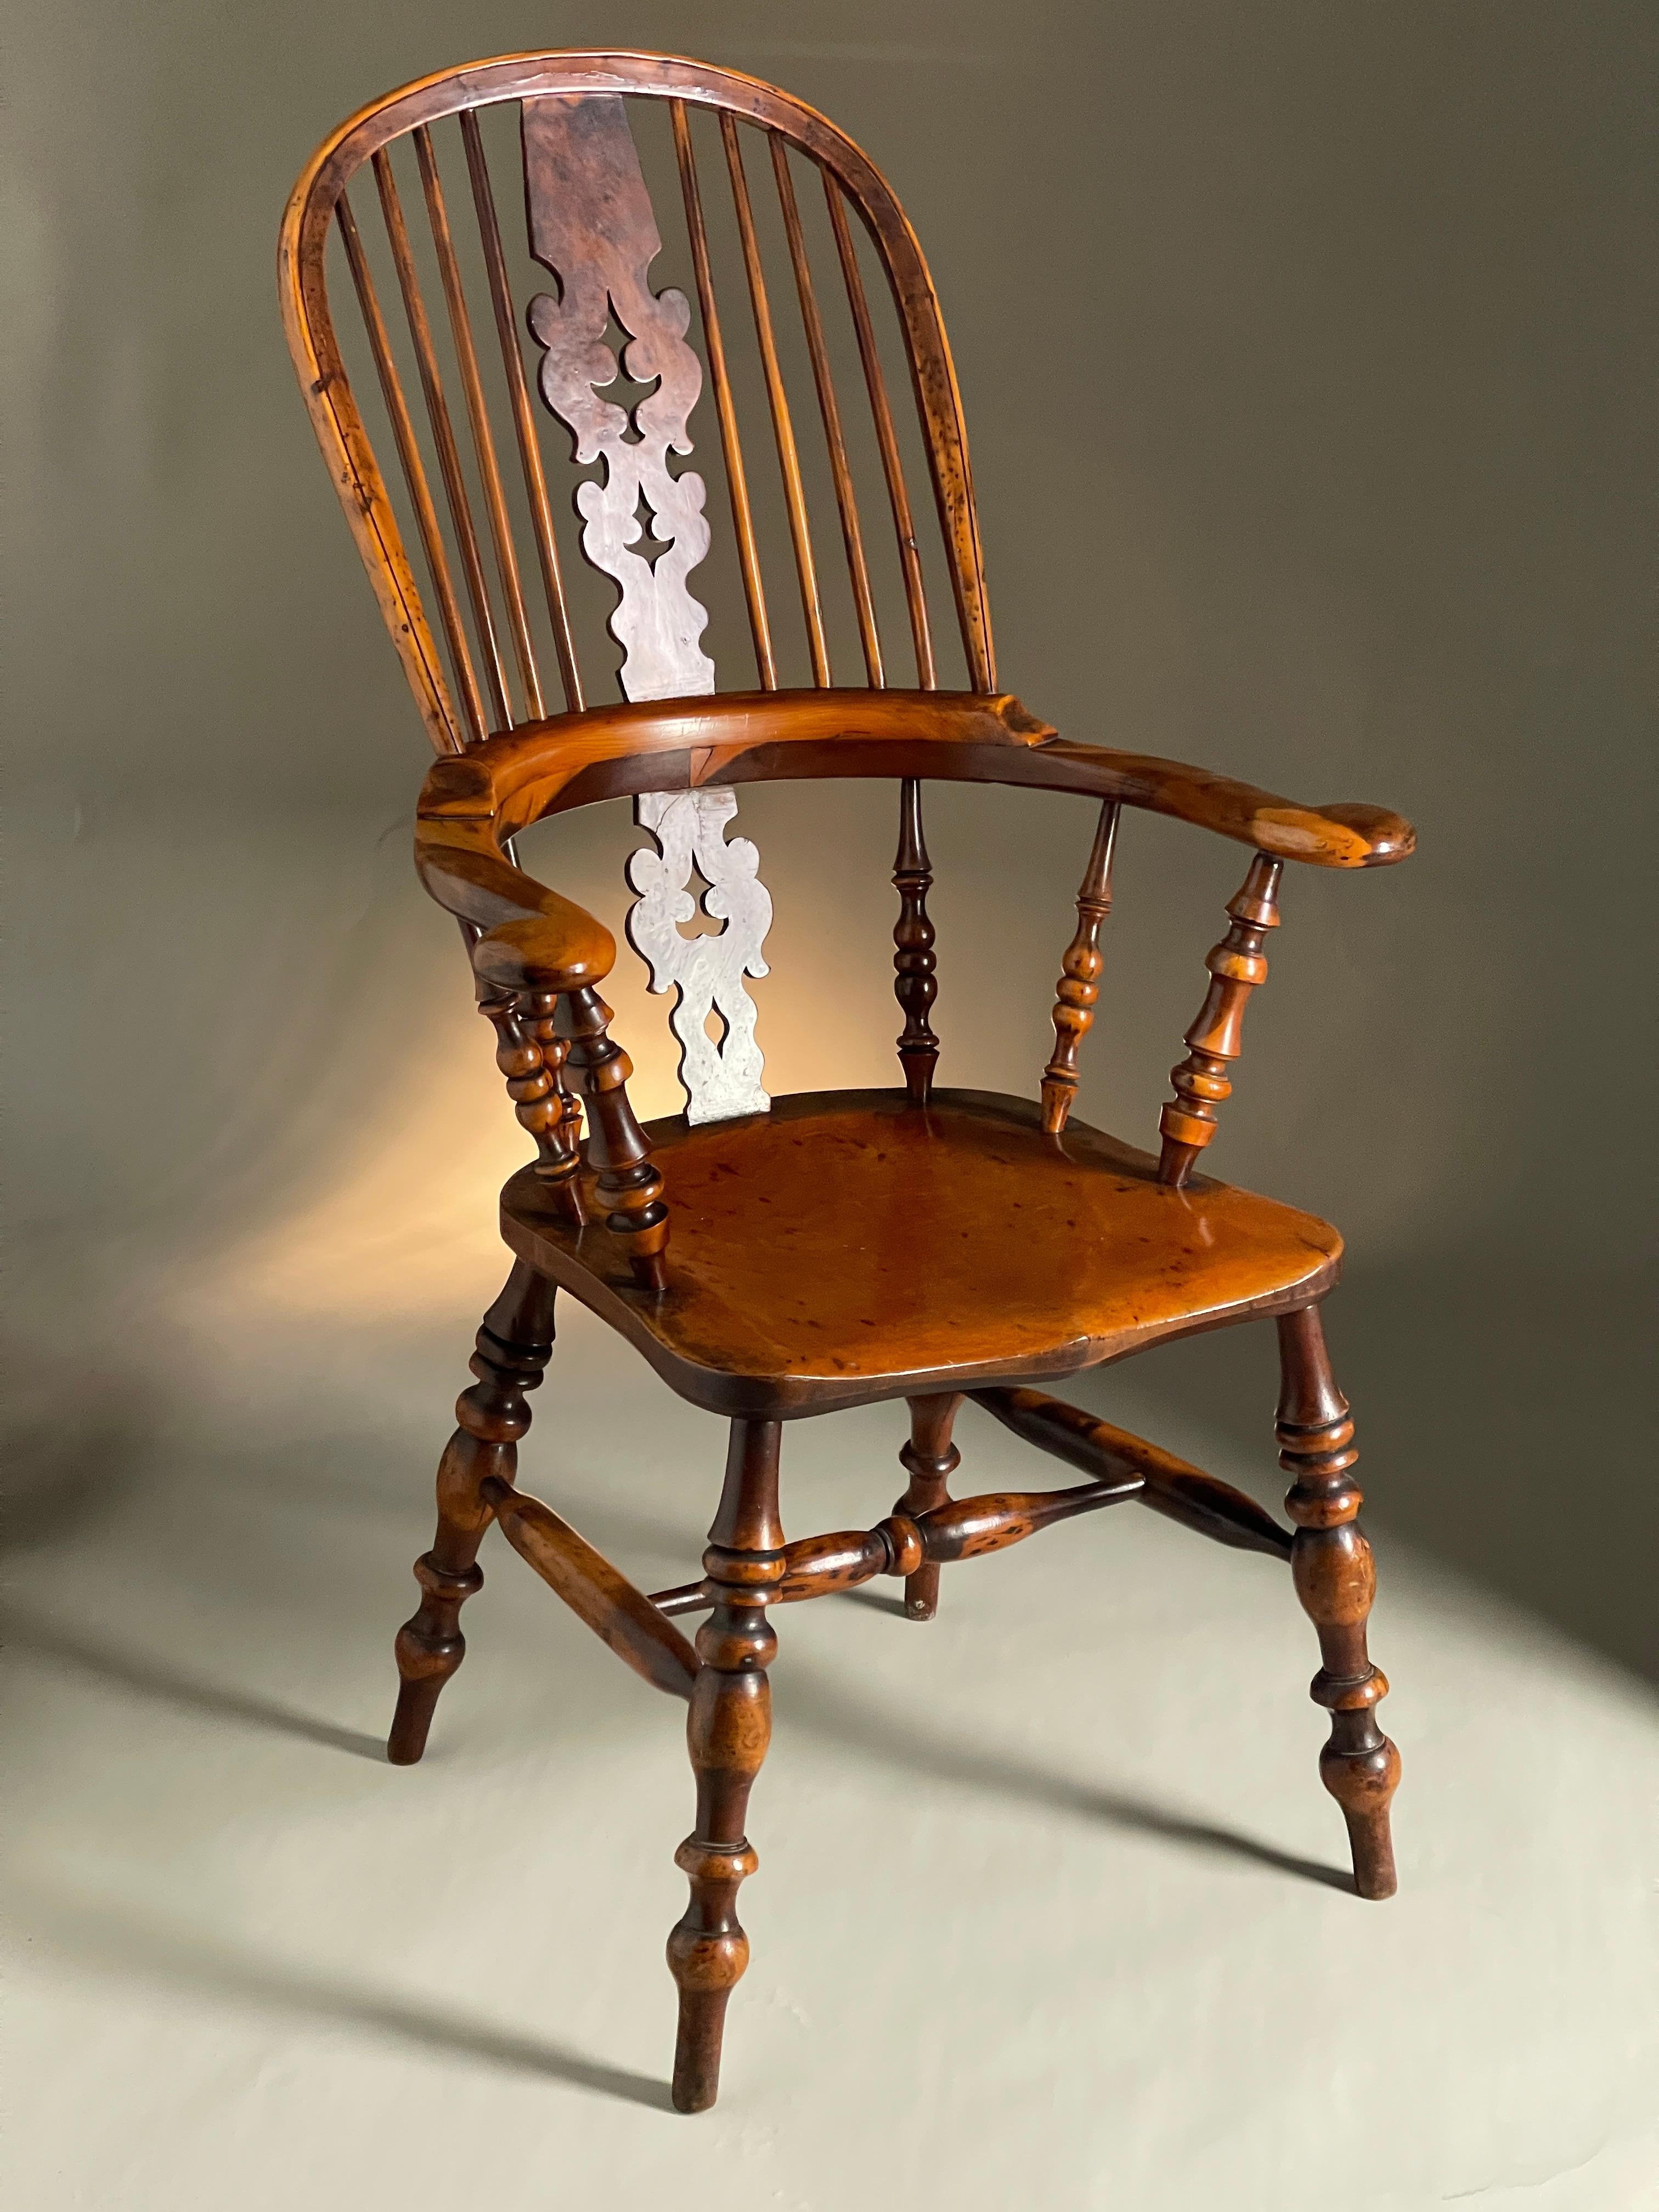 Merveilleuse chaise Windsor en if, excellente couleur et patine, 19ème siècle, large accoudoir et ronce. 
Taille 115 cm de haut 68 cm de large 57 cm de profondeur

